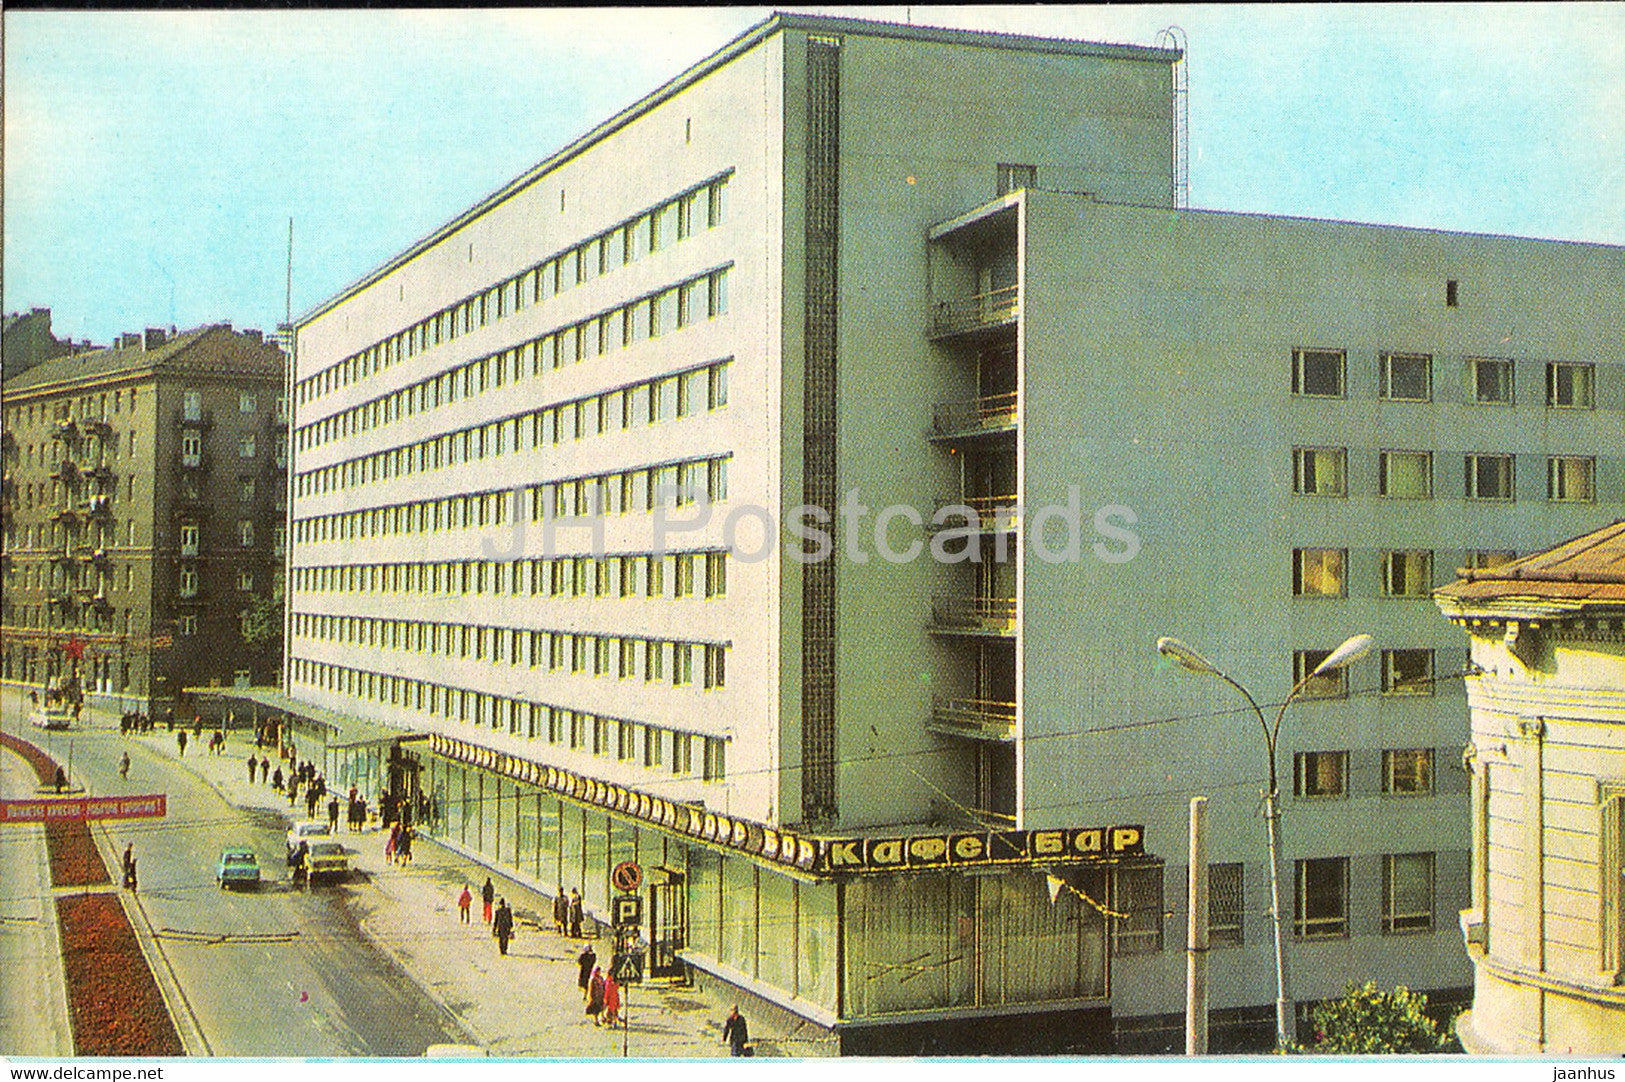 Lviv - Lvov - hotel Lviv - 1977 - Ukraine USSR - unused - JH Postcards